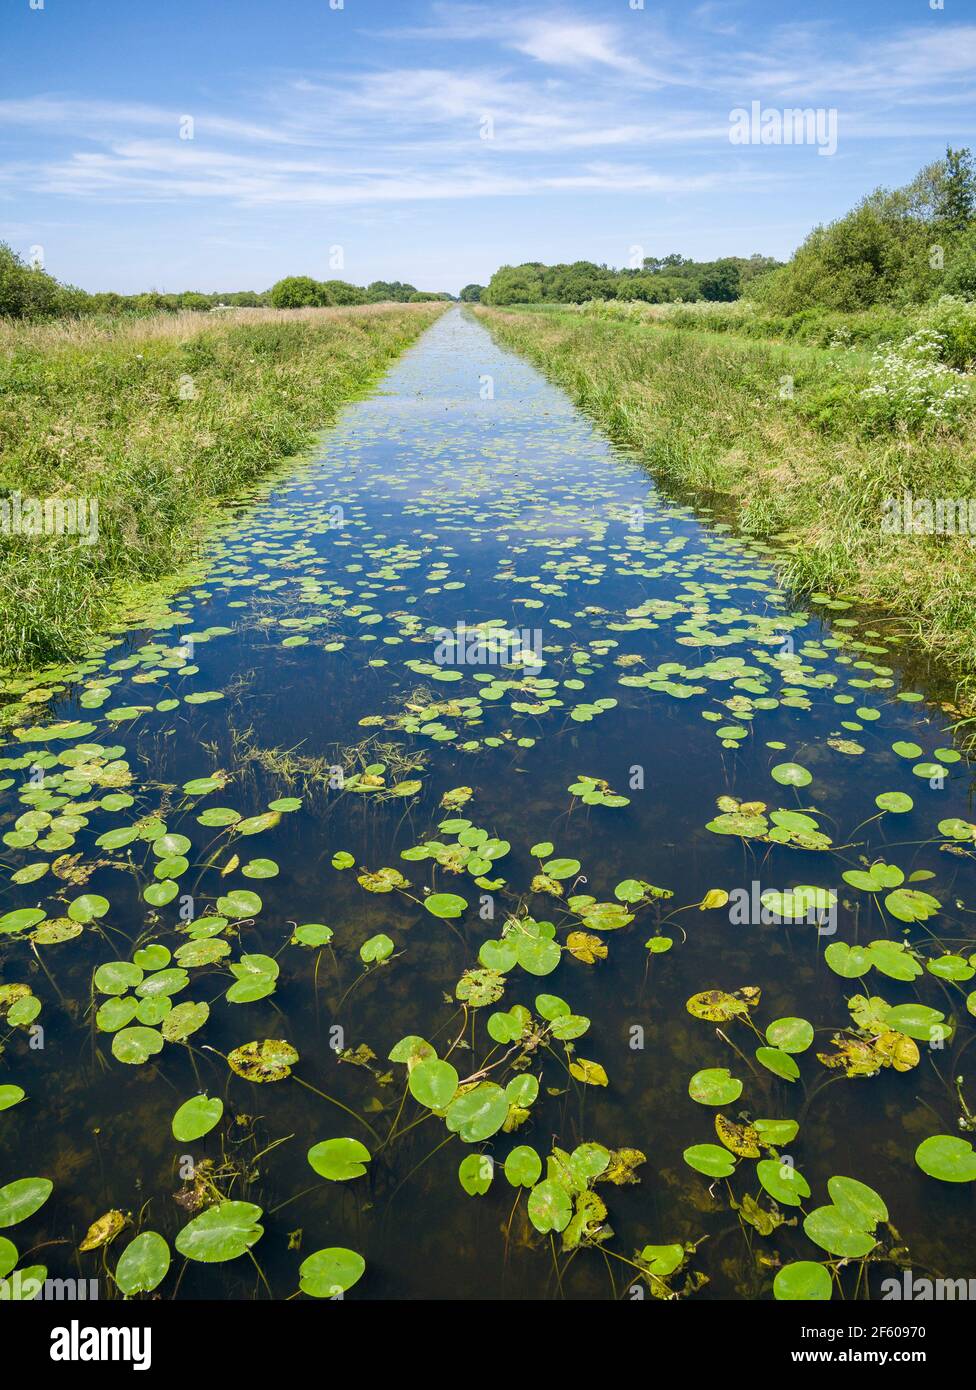 Le fossé de drainage du drain sud de la réserve naturelle nationale de Shapwick Heath, qui fait partie des marais Avalon dans les niveaux de Somerset, en Angleterre. Banque D'Images